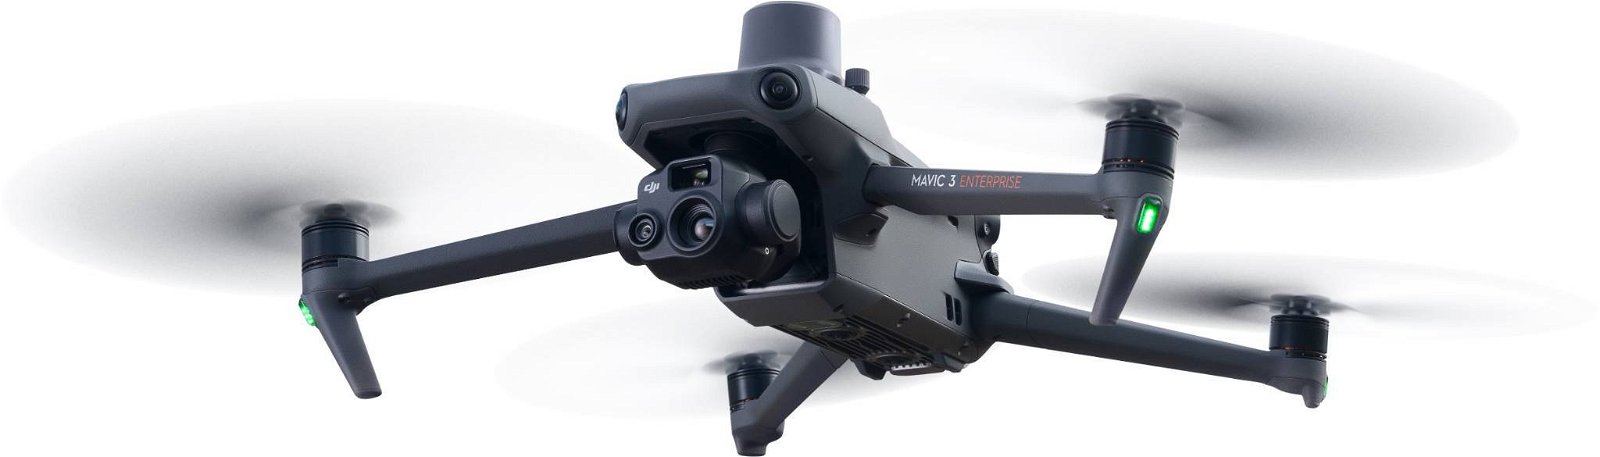 Immagine di I nuovi droni commerciali di DJI vogliono ridefinire lo standard della categoria